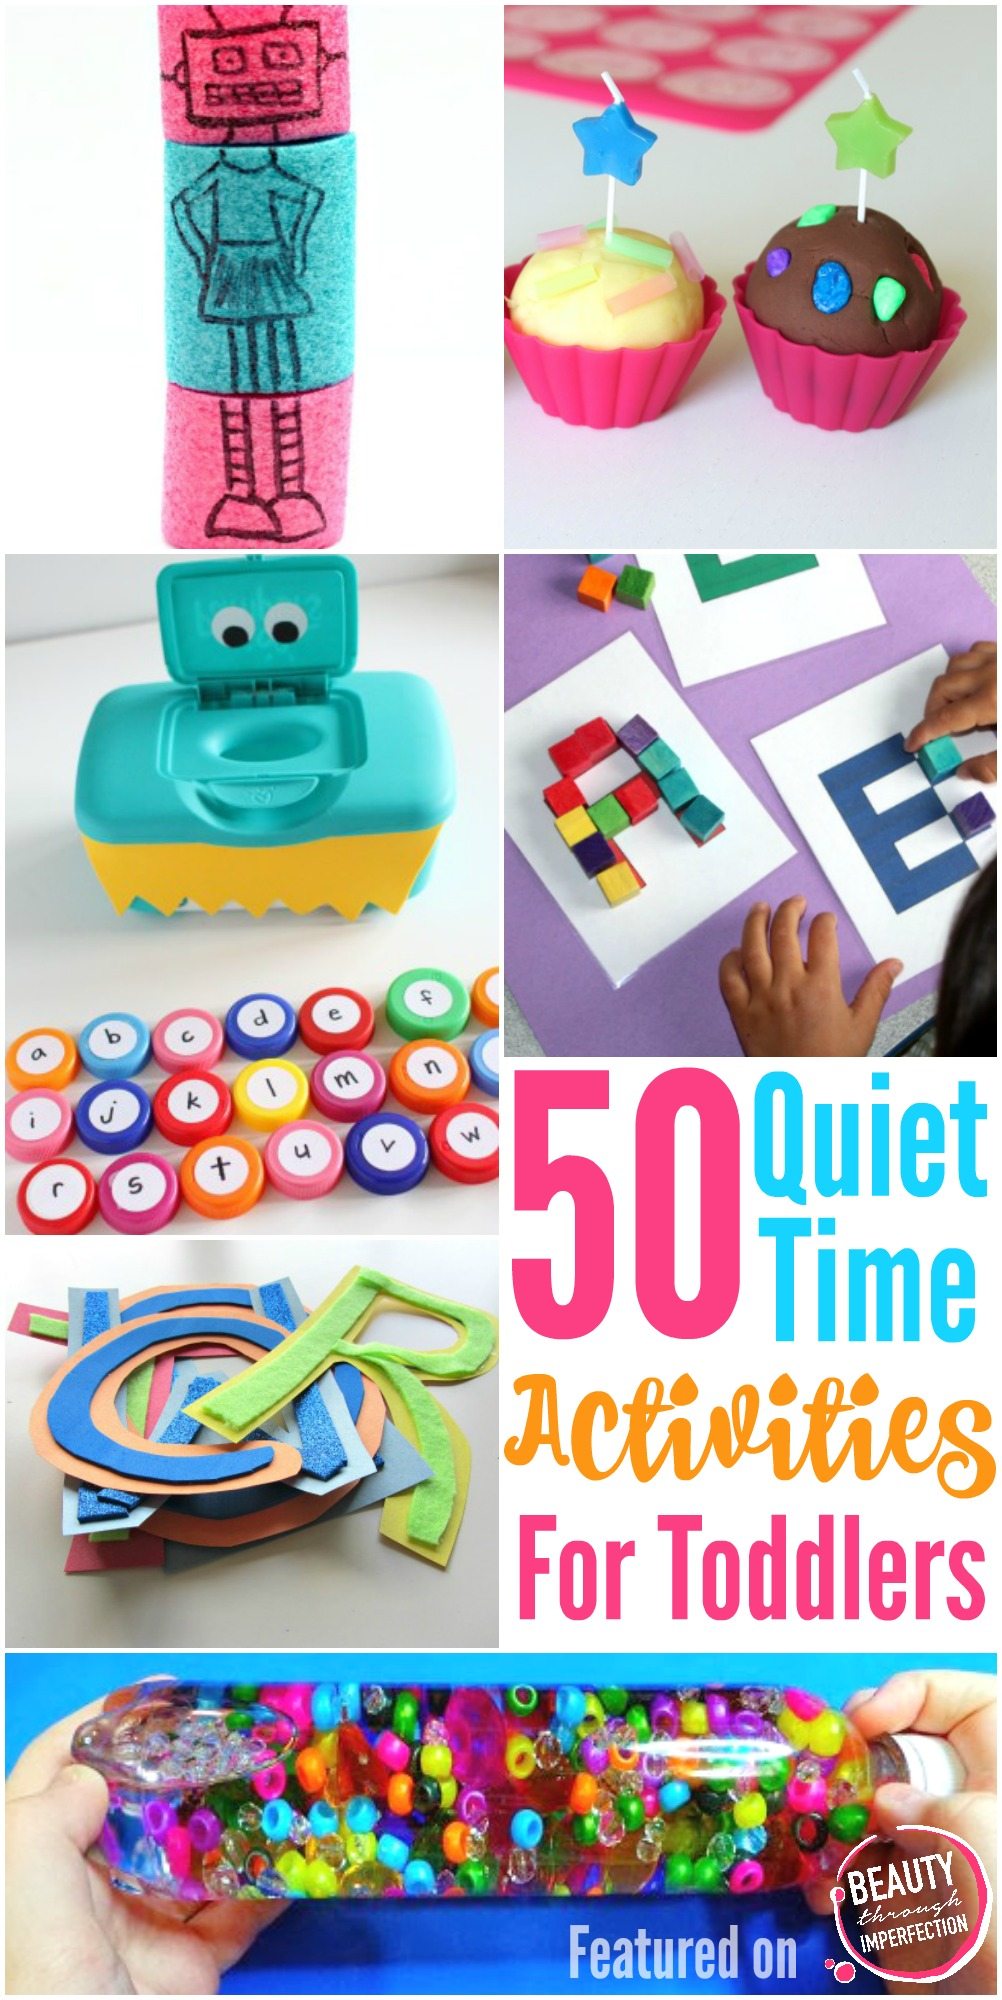 quiet time activities